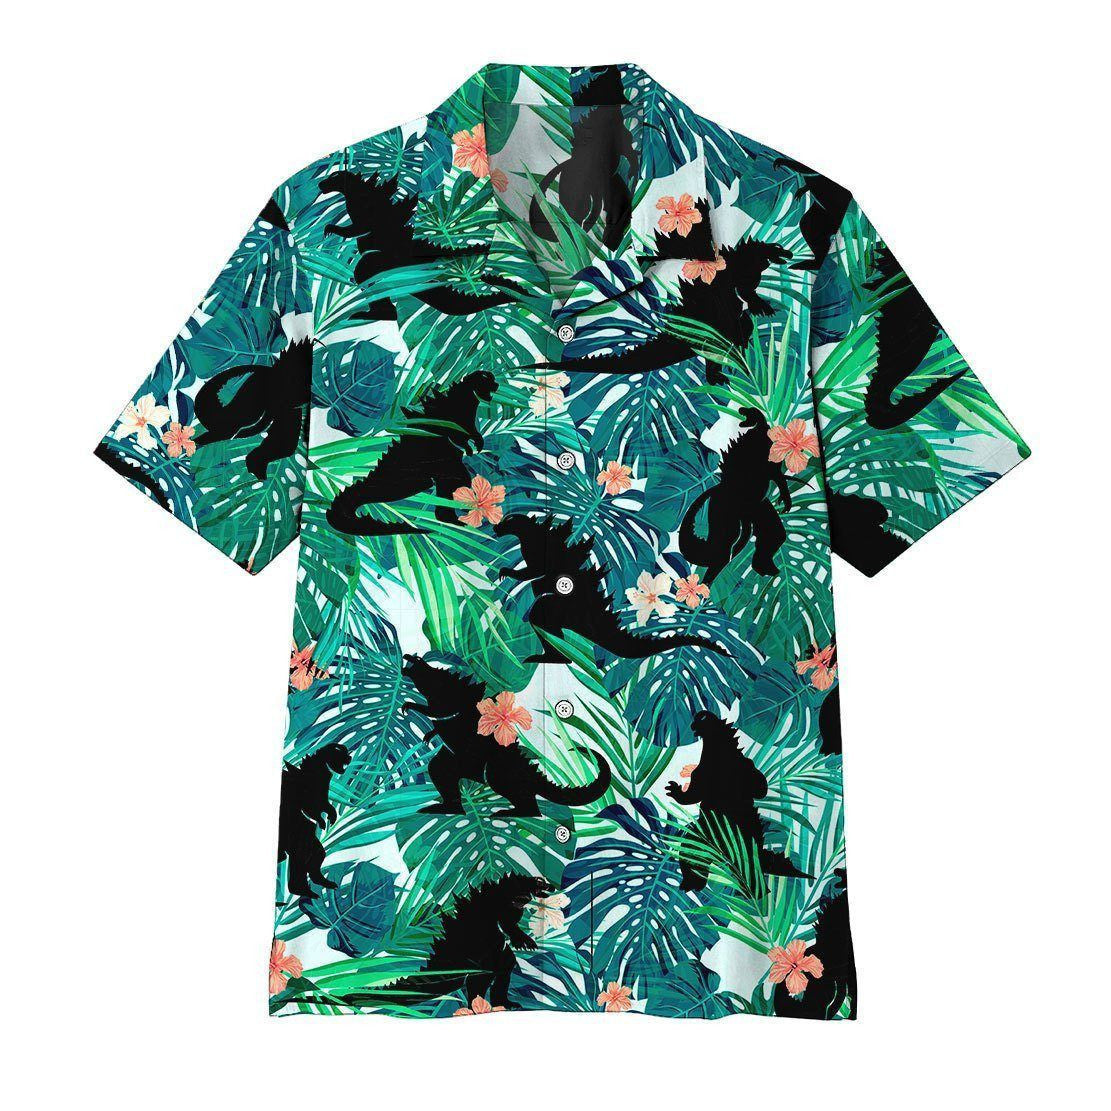 Godzillla Hawaiian Shirt Aloha Shirt For Summer